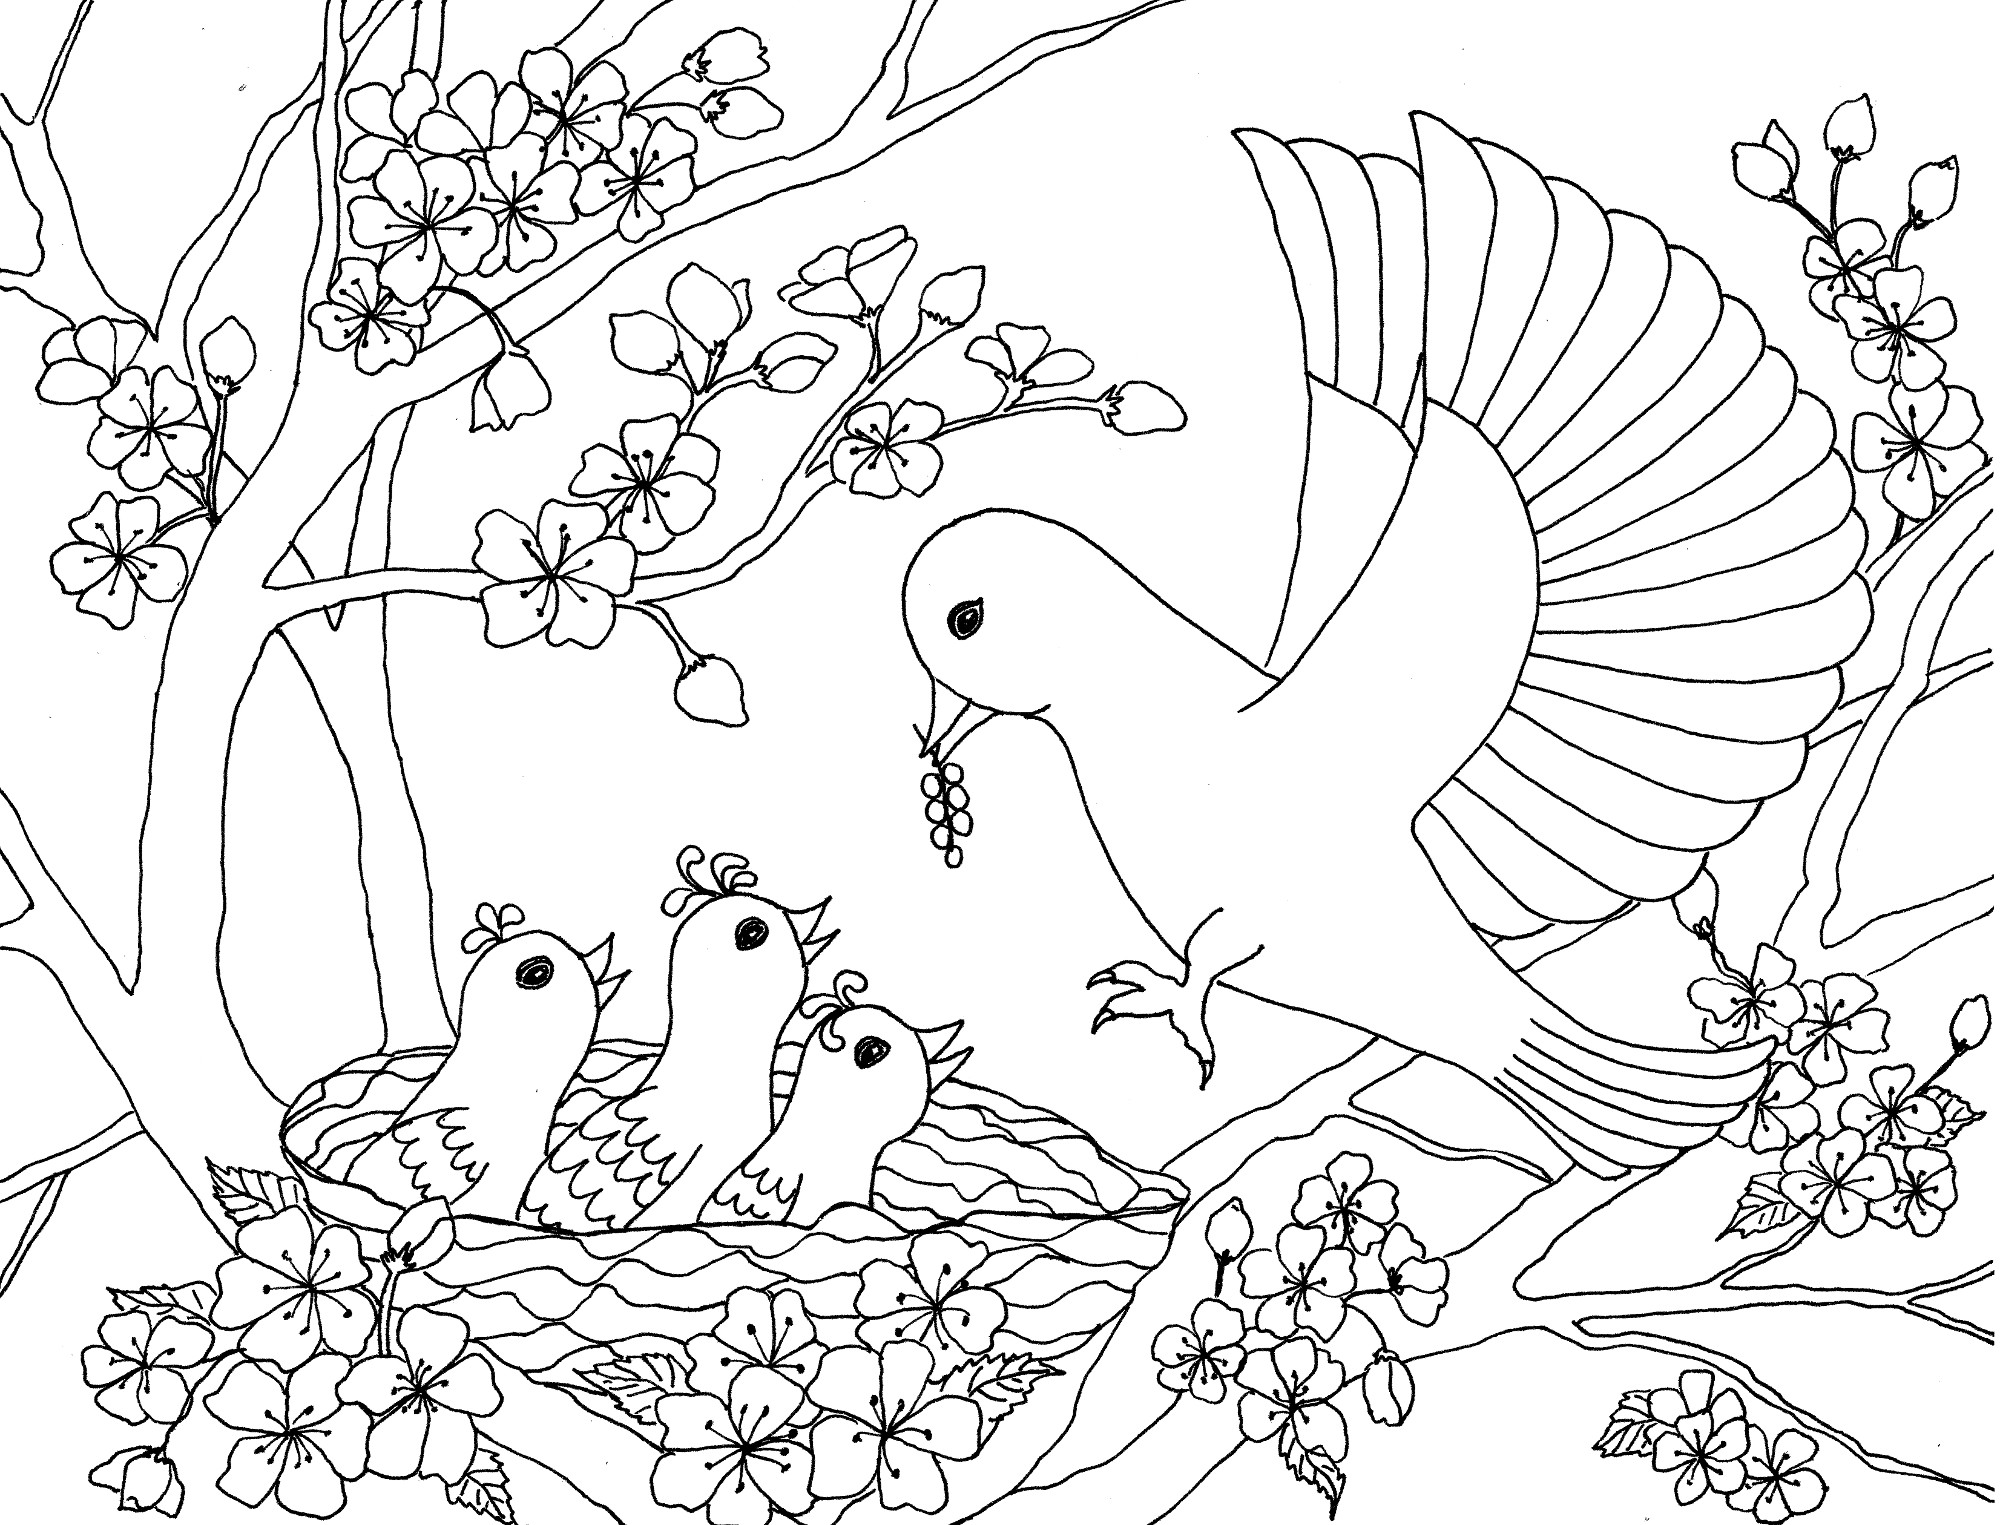 День птиц распечатать. Птицы. Раскраска. Птичка раскраска. Раскраска природа. Птицы раскраска для детей.